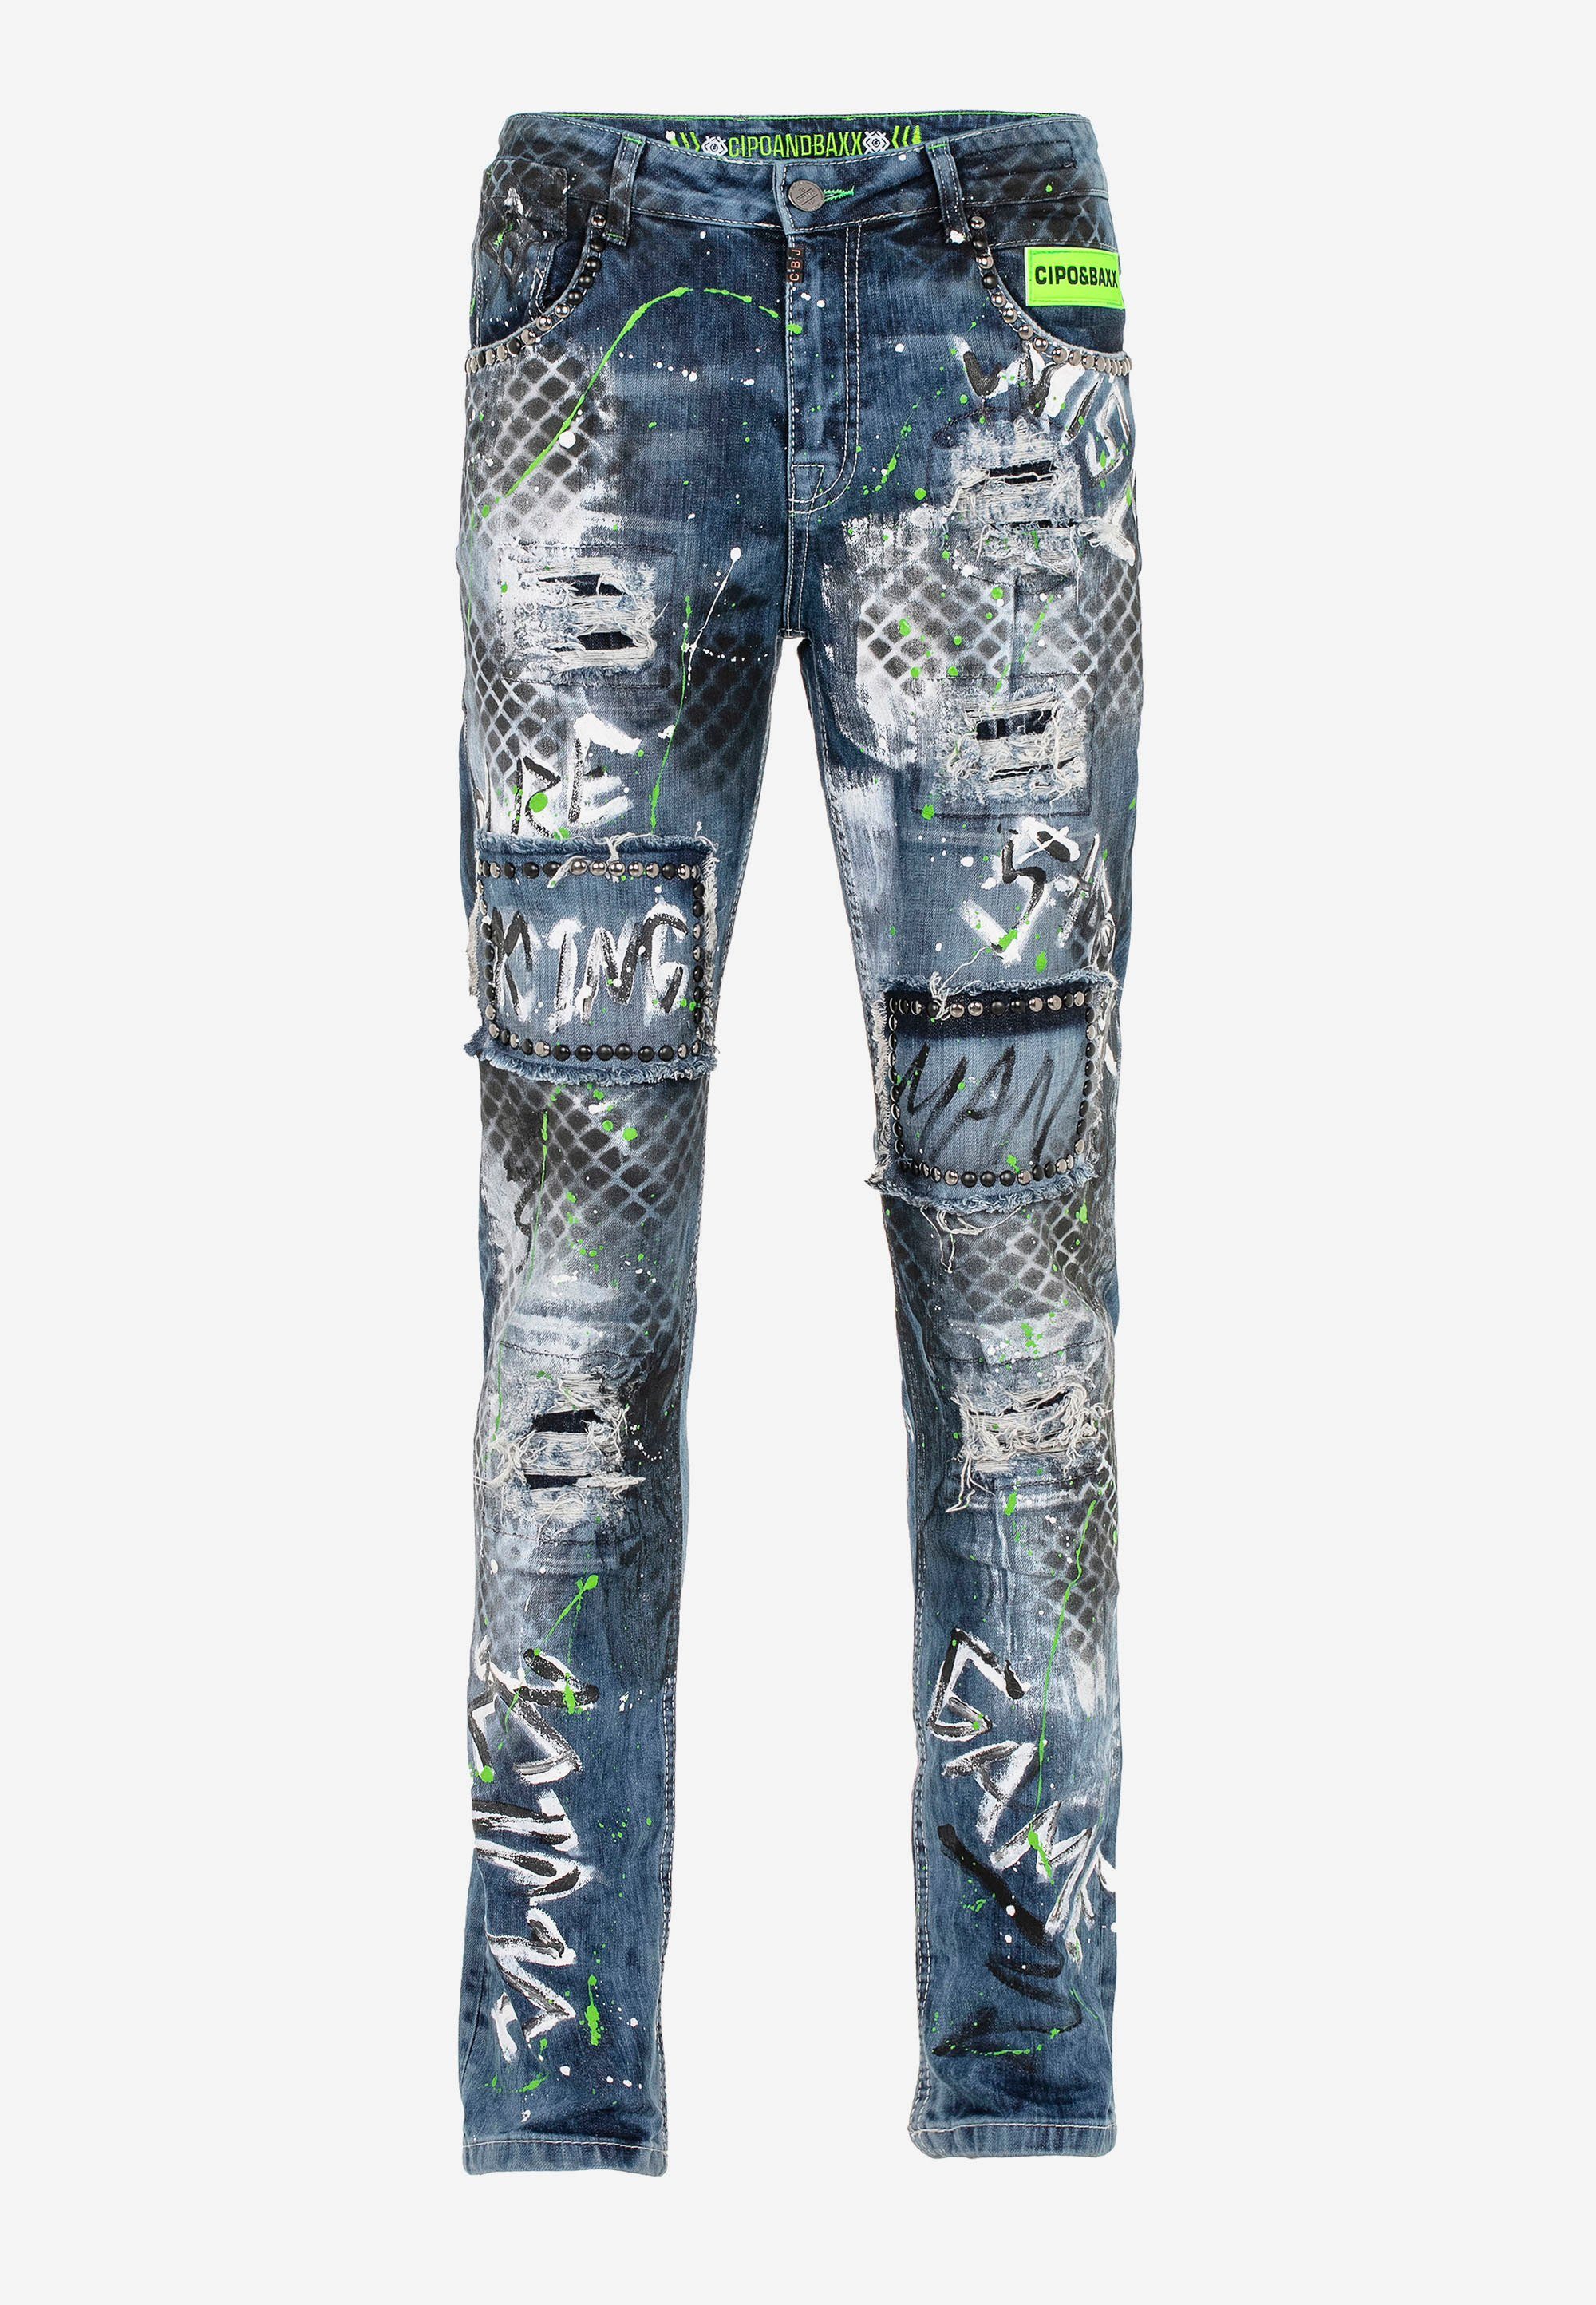 Cipo & Baxx Bequeme Jeans und Nieten mit Farbspritzern